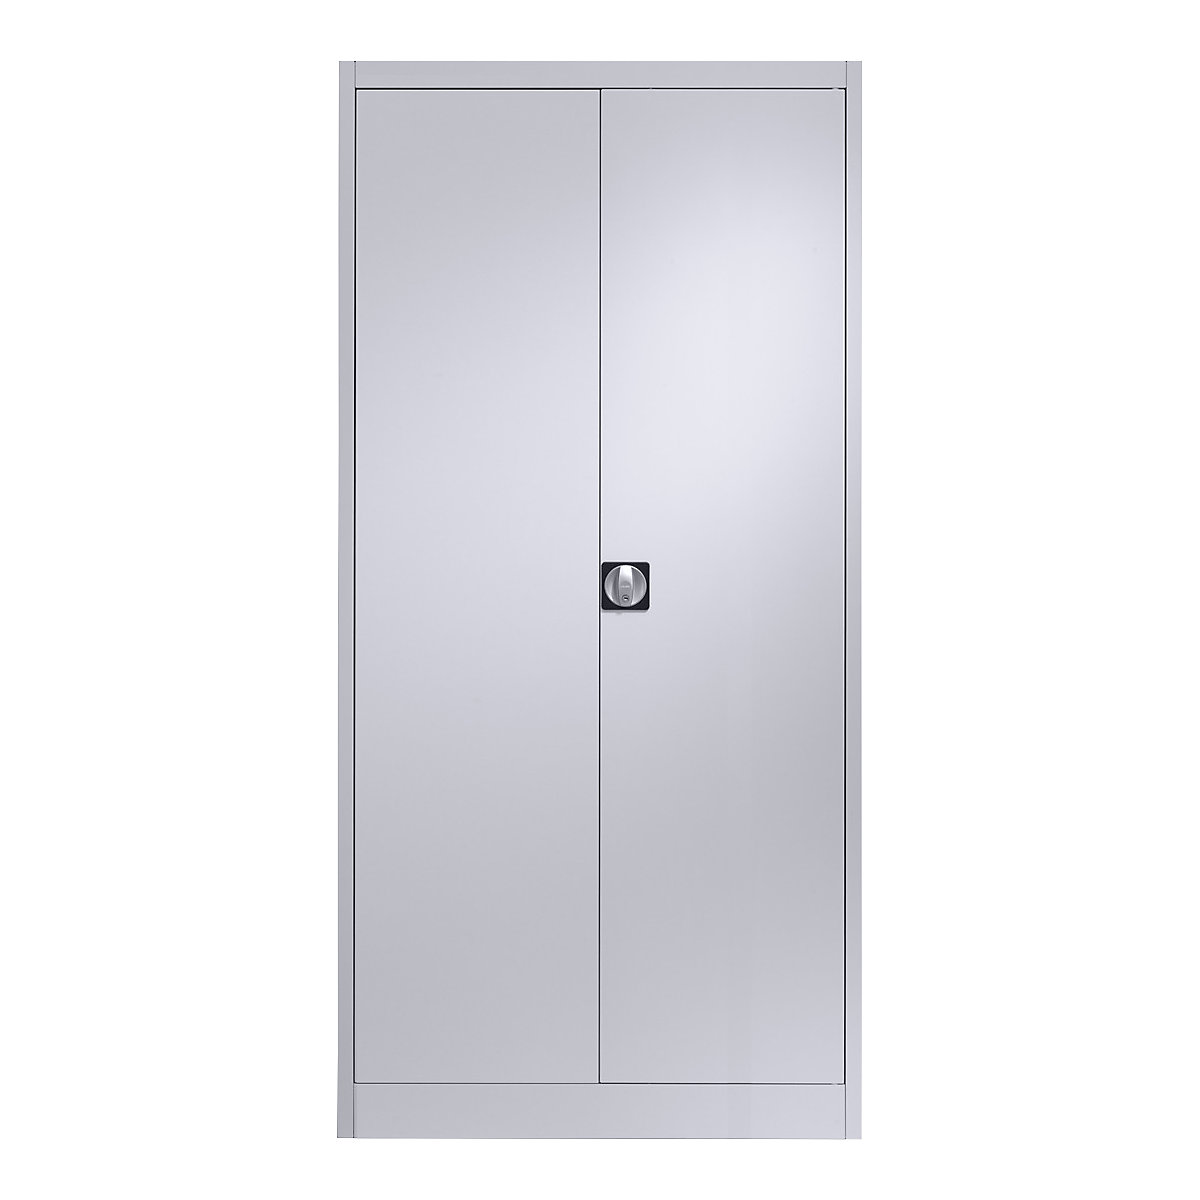 Szafa stalowa z drzwiami skrzydłowymi – mauser, 4 półki, gł. 500 mm, biały aluminium